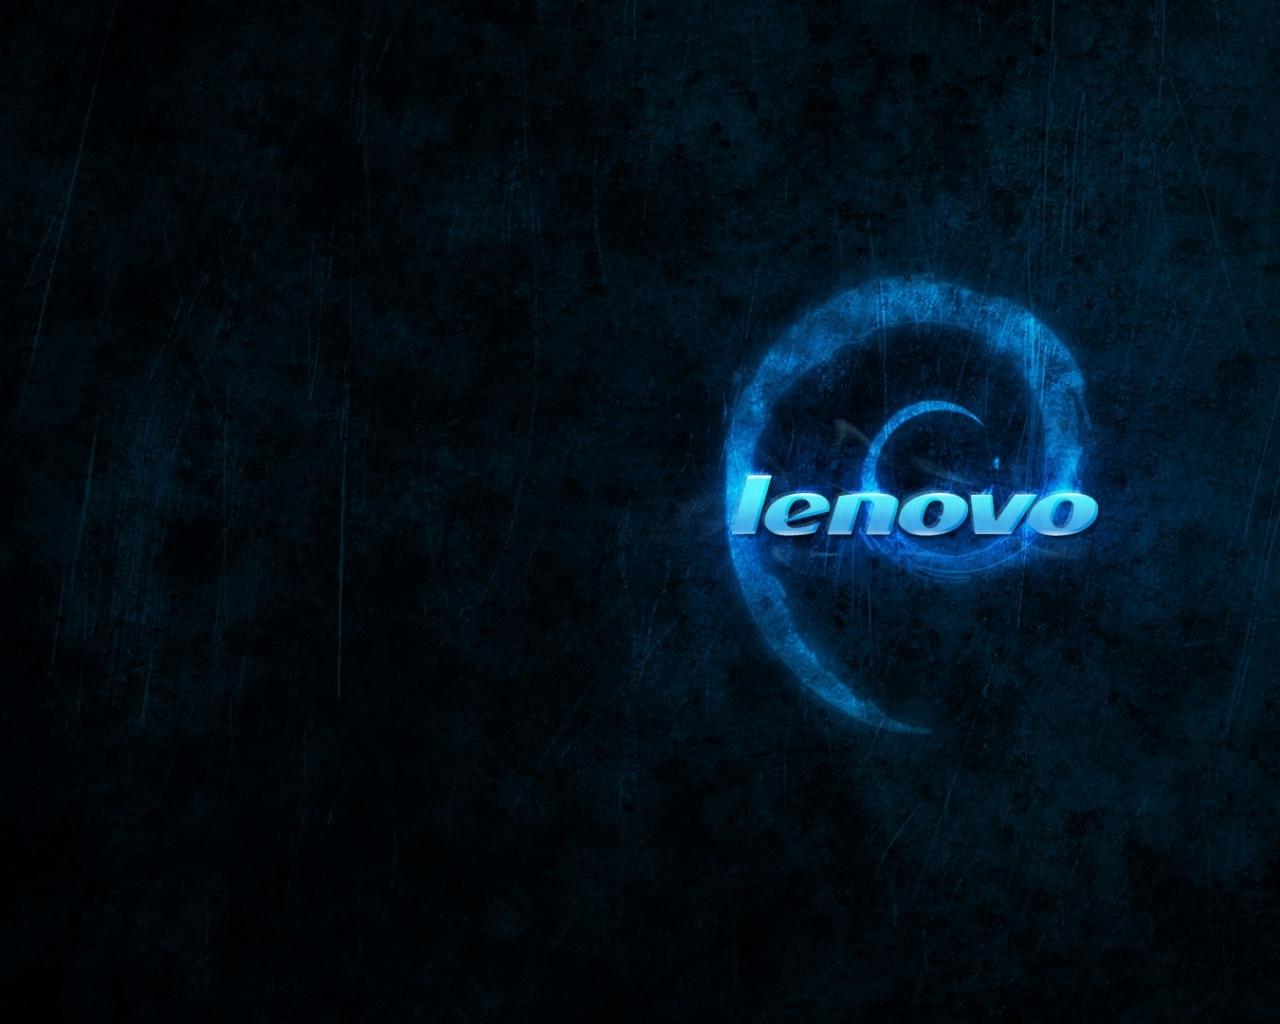 Cool Lenovo Computer Wallpapers - Top Free Cool Lenovo Computer ...